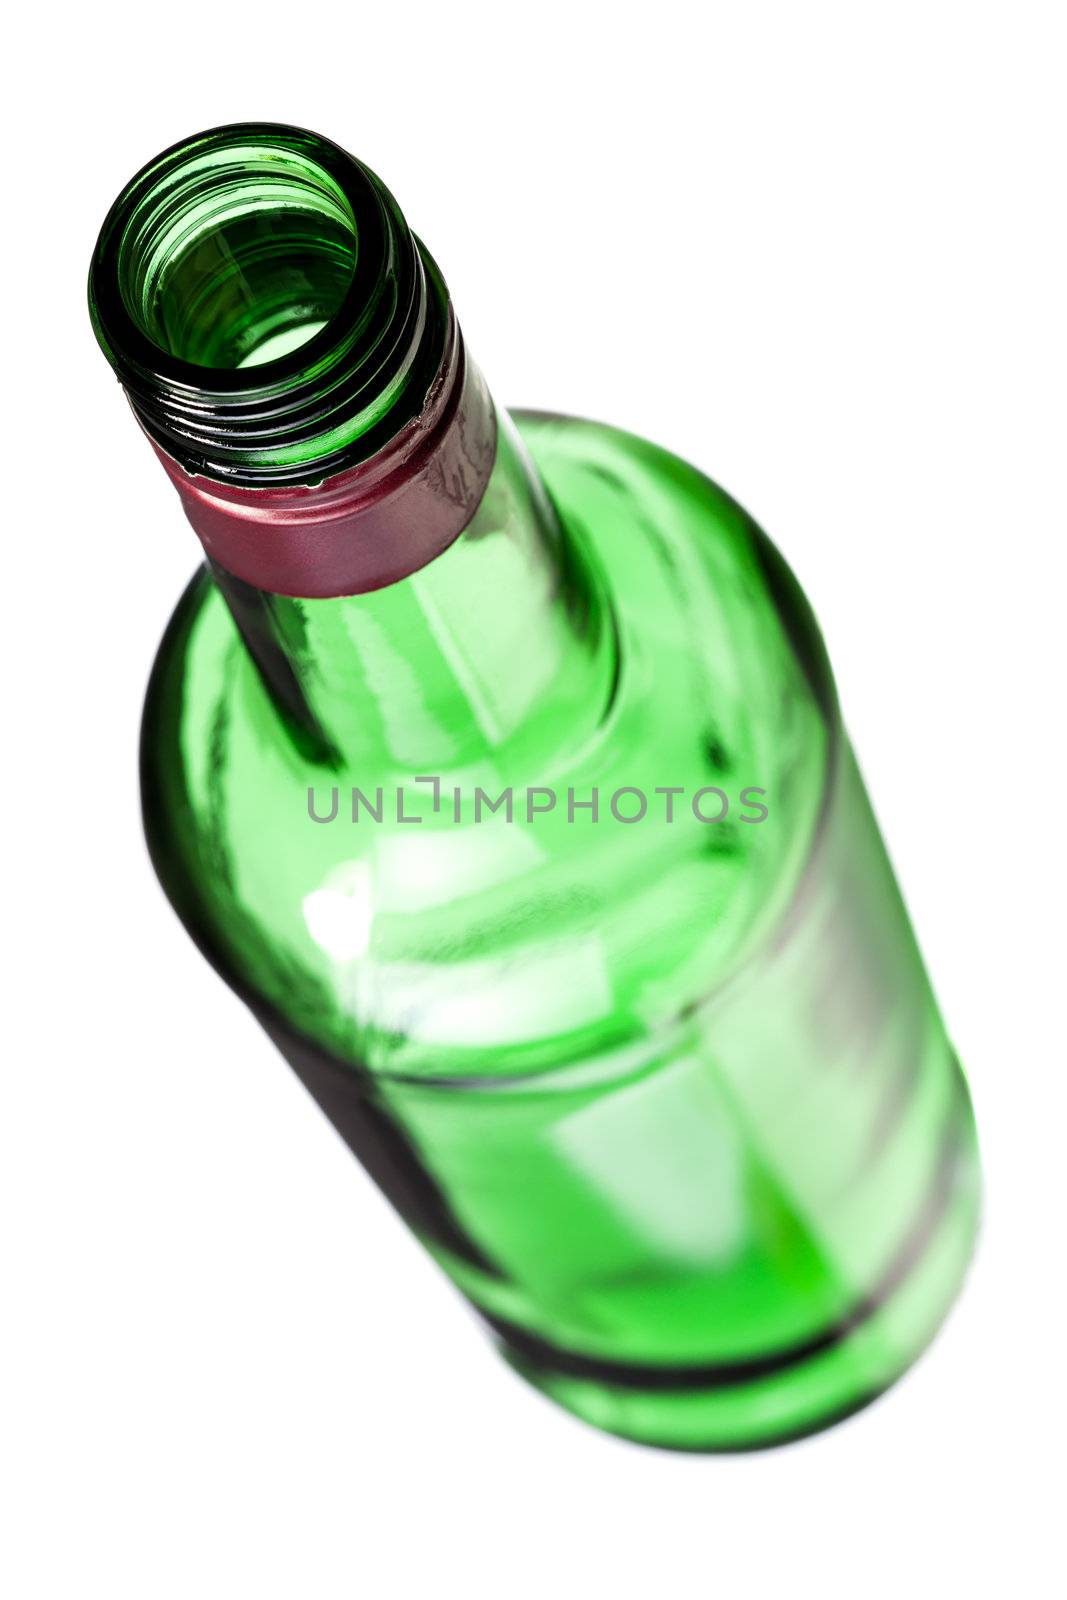 empty opened alcohol bottle, isolated on white